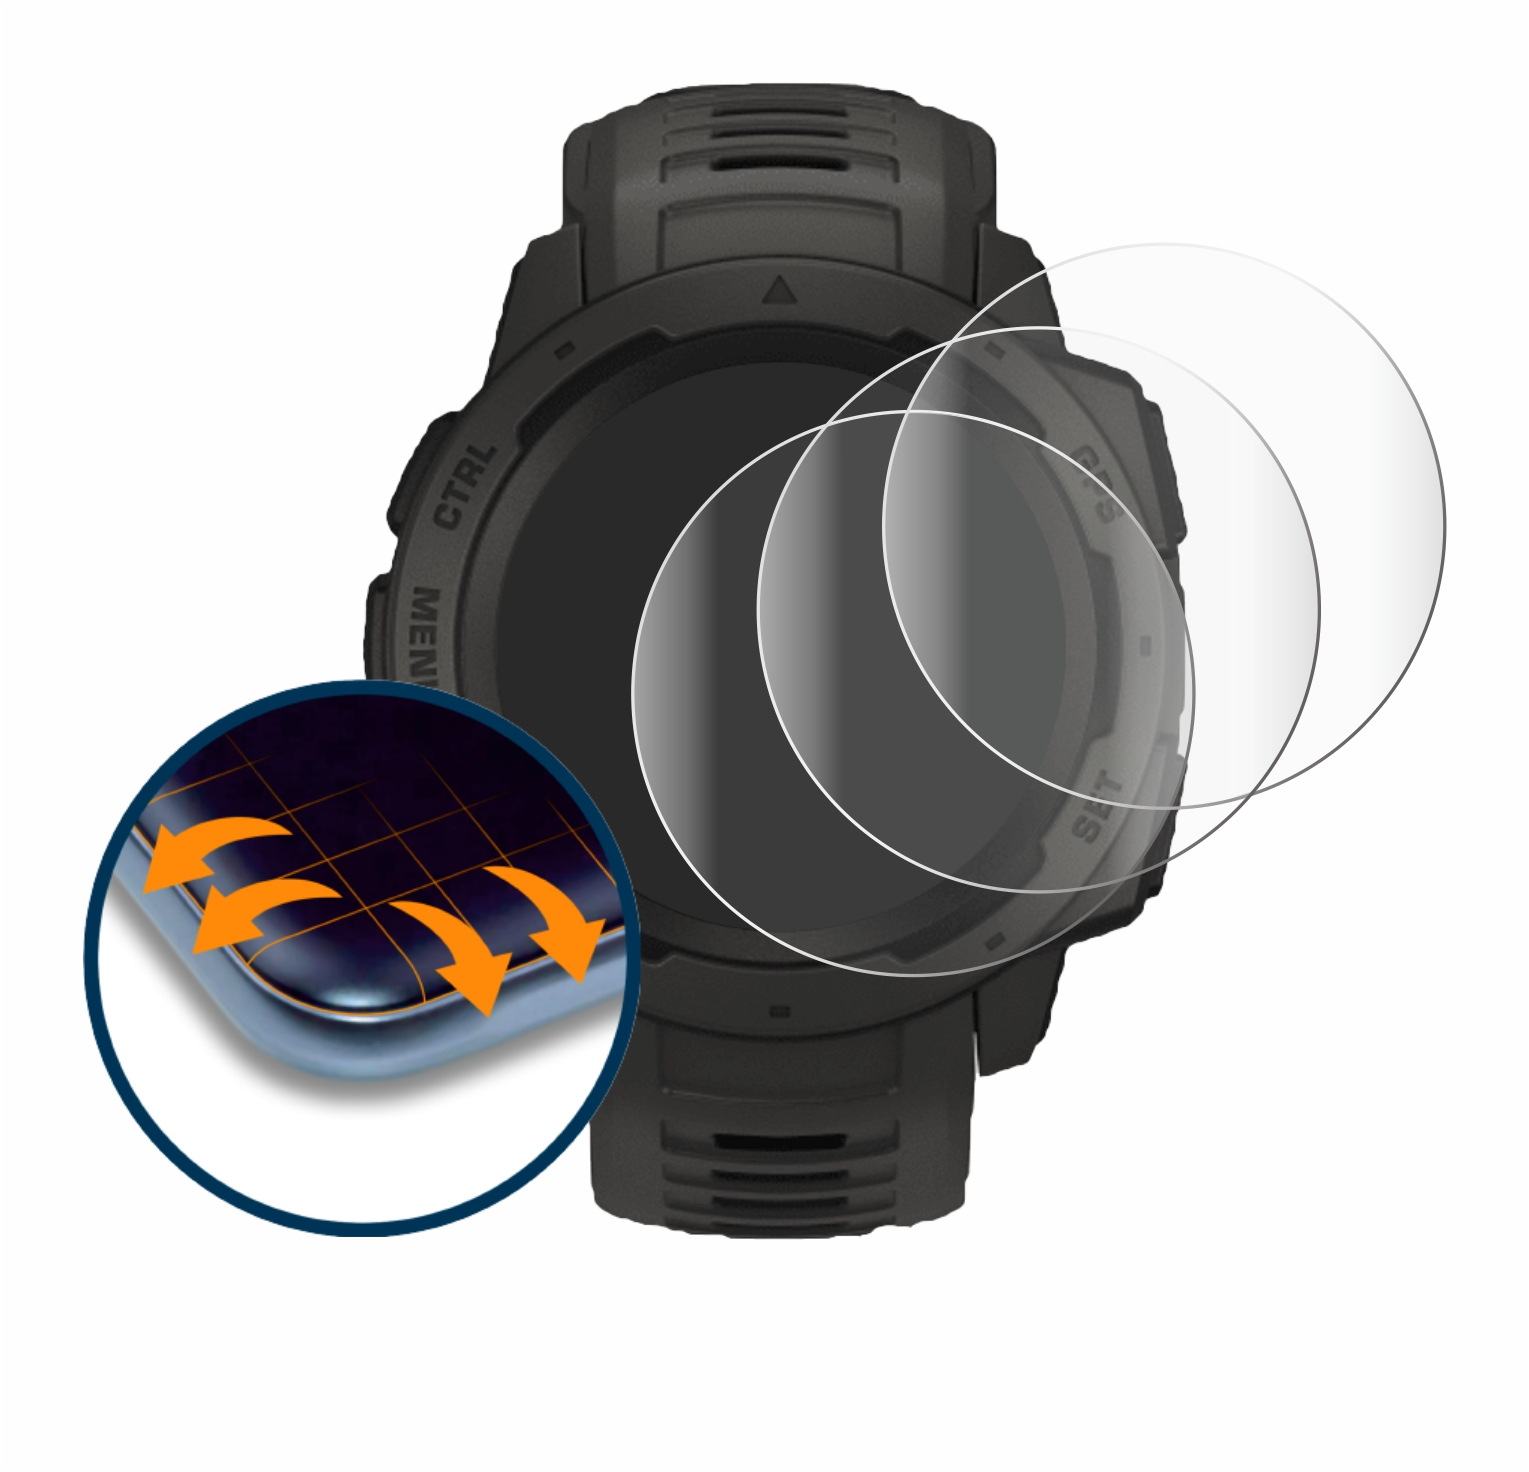 SAVVIES 4x Flex Full-Cover Curved 3D Instinct Solar) Schutzfolie(für Garmin